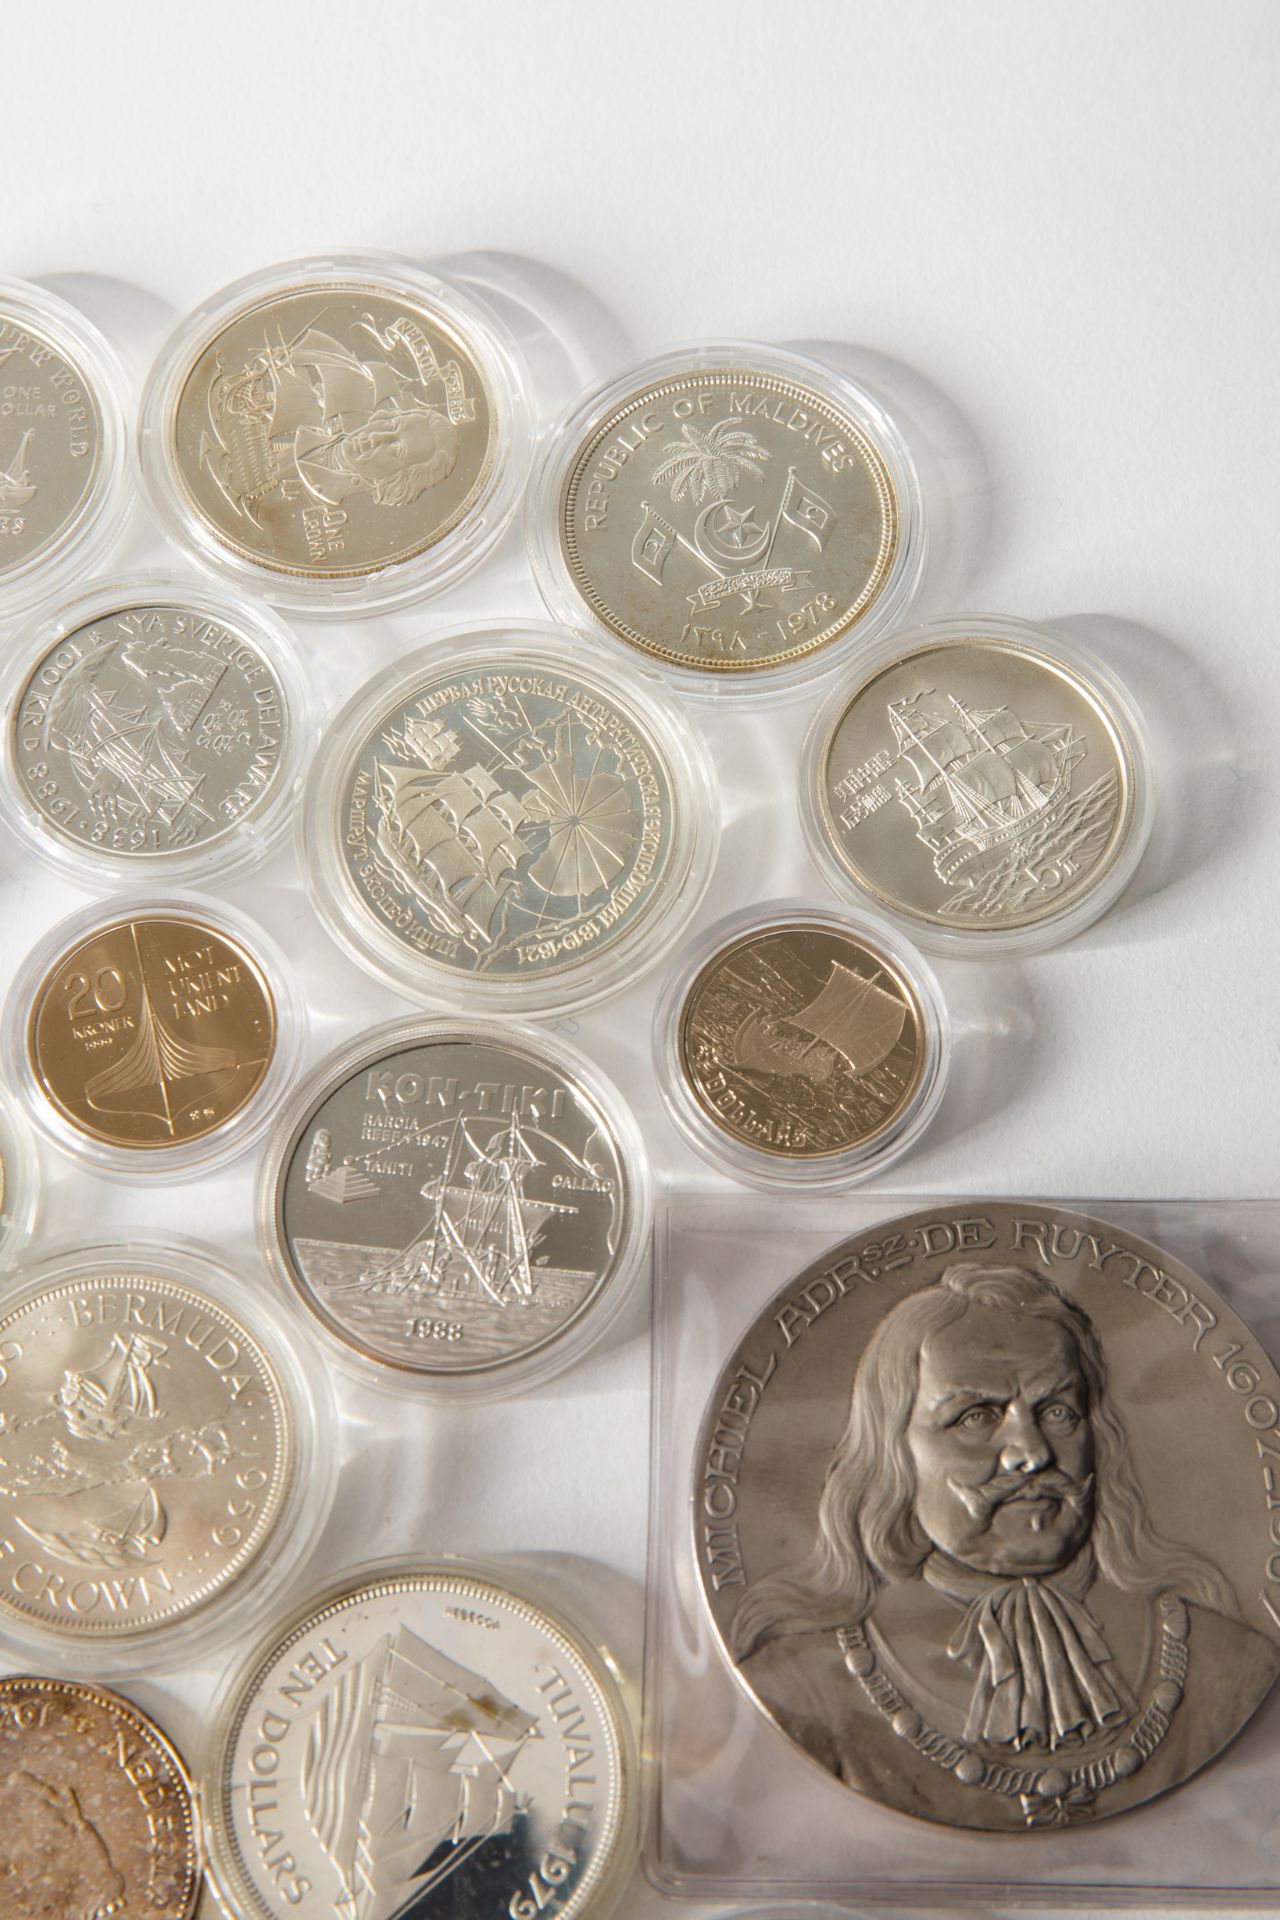 22 silver coins ships 1978-2017 worldwide - Bild 5 aus 10